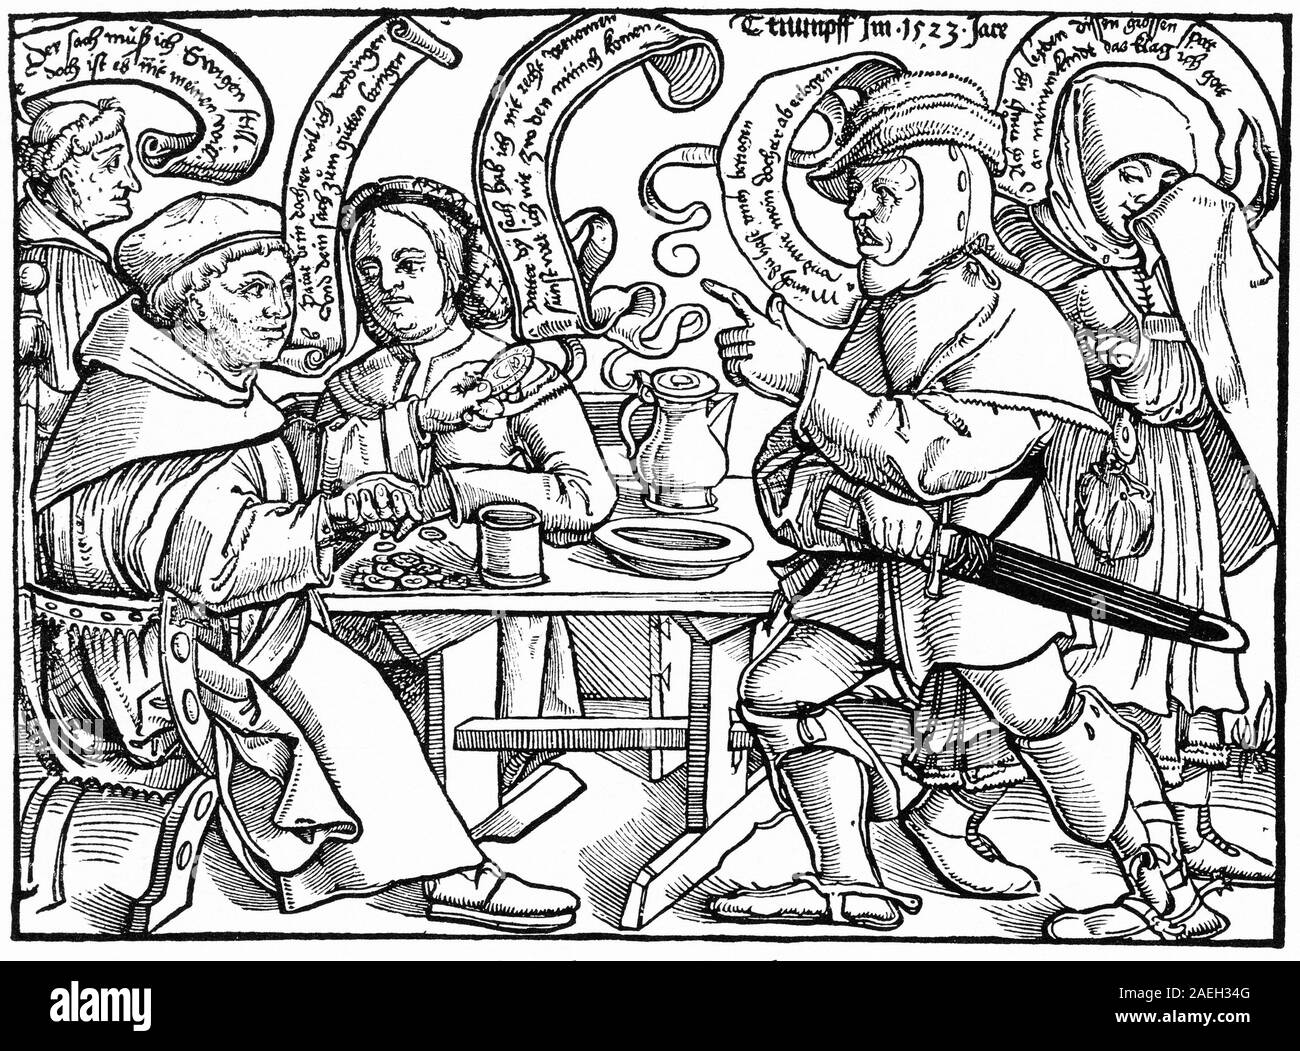 Holzschnitt von 1523 der typischen anti-katholische Propaganda während der Reformation. In diesem Cartoon, ein Vater bricht auf einen Mönch zu beschädigen, seine Tochter zu suchen. Die sitzende Mönch versucht der Vater mit Geld zu bestechen, während der Mönch auf der linken Seite sagt: "Diese Sache zwingt mich noch zu sein, obwohl dies nicht mein Wille". Stockfoto